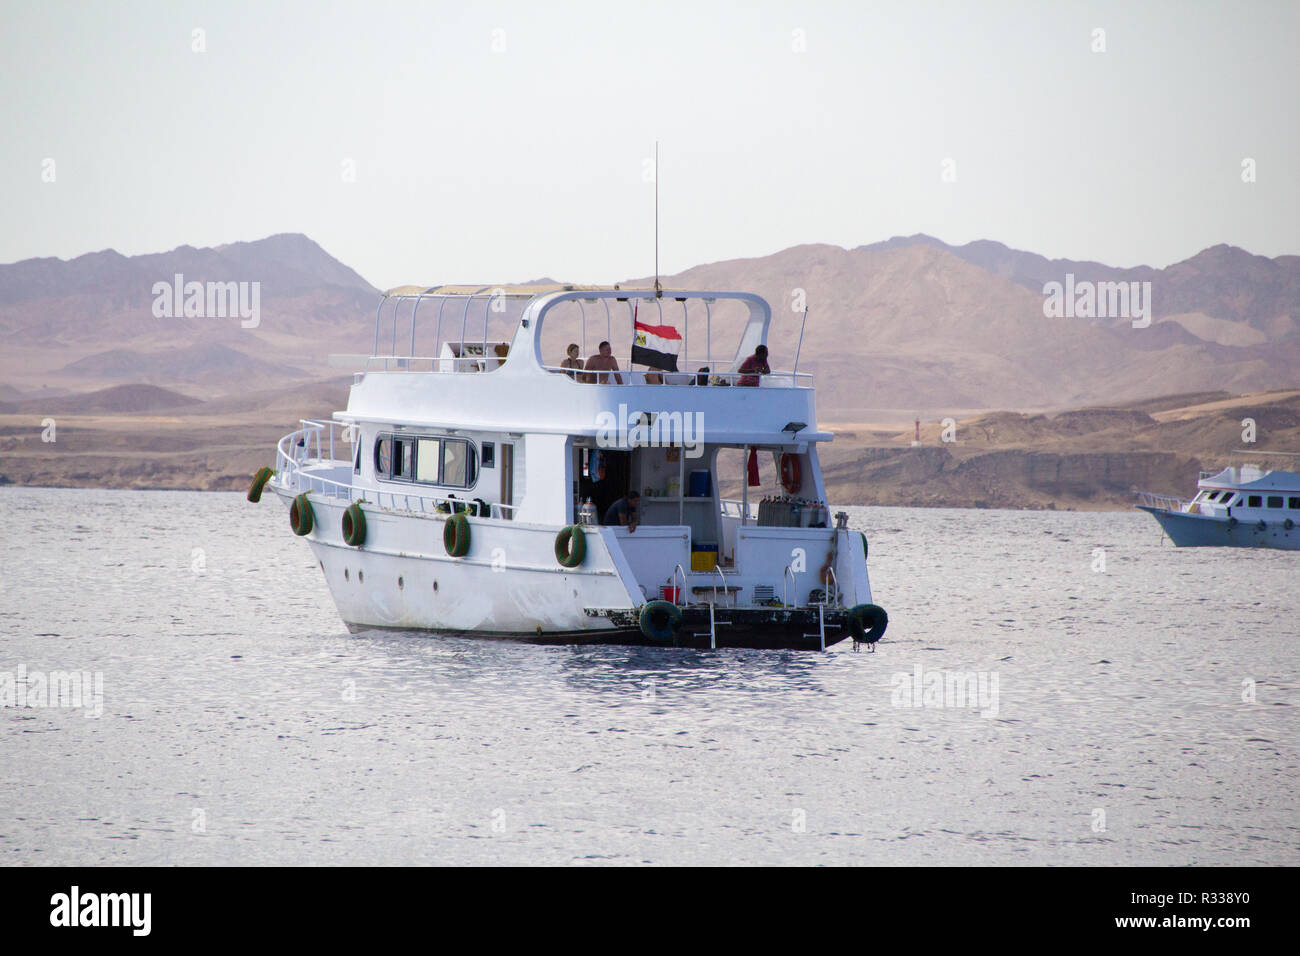 El-Shaikh Sharm, Ägypten - November 2, 2018: - Foto für touristische Boot in der ägyptischen Stadt Scharm el-Scheich, zeigt das Boot segeln im Roten Meer und Stockfoto